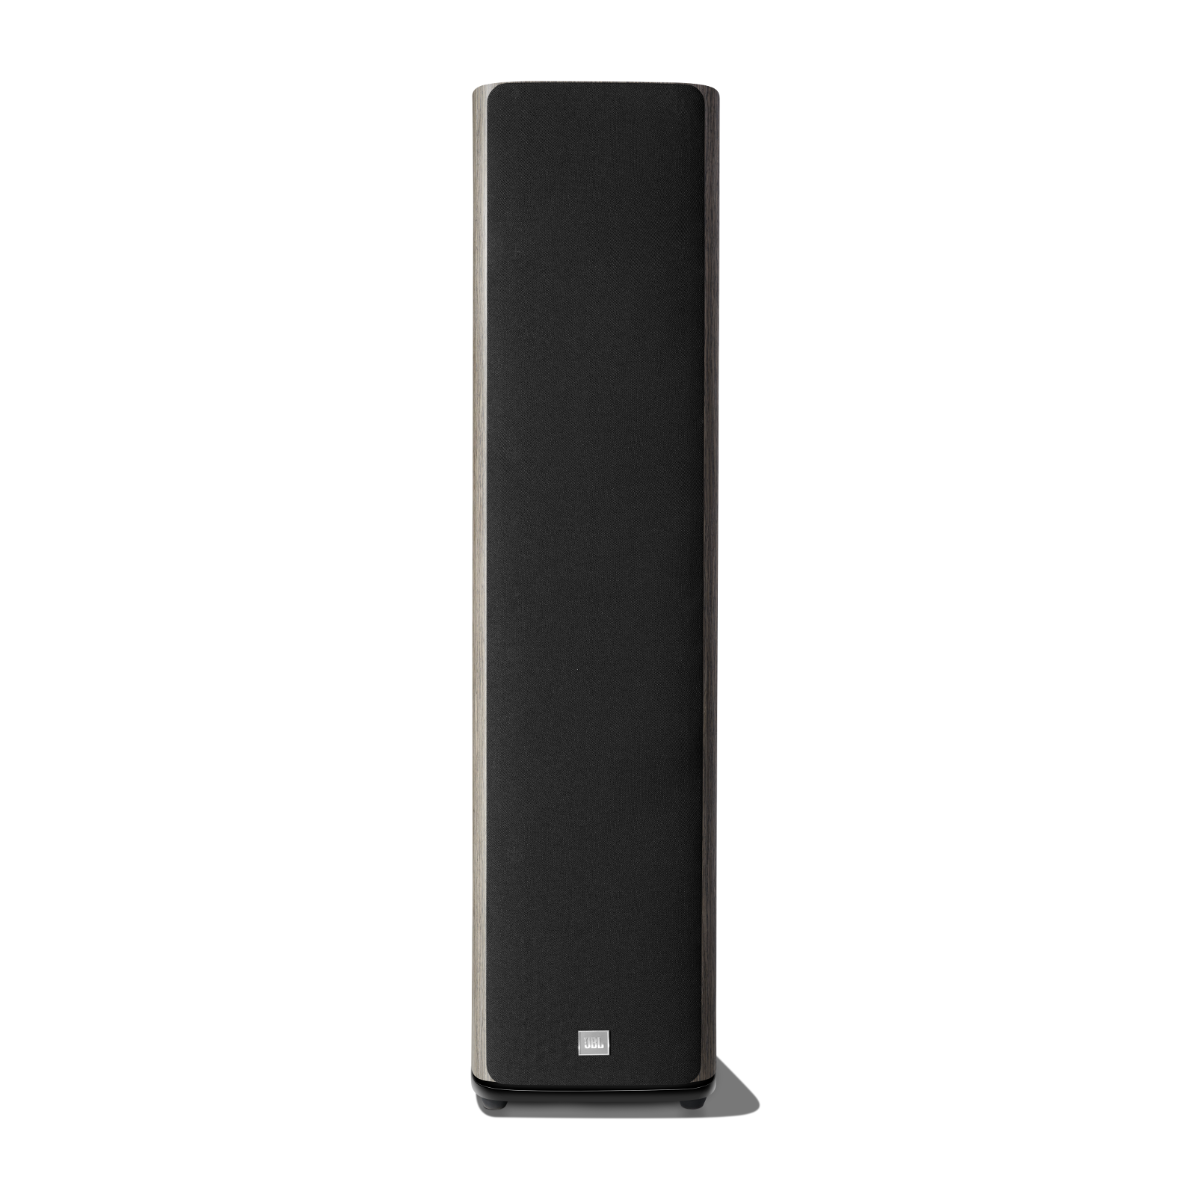 JBL HDI3600 Floorstanding Speakers